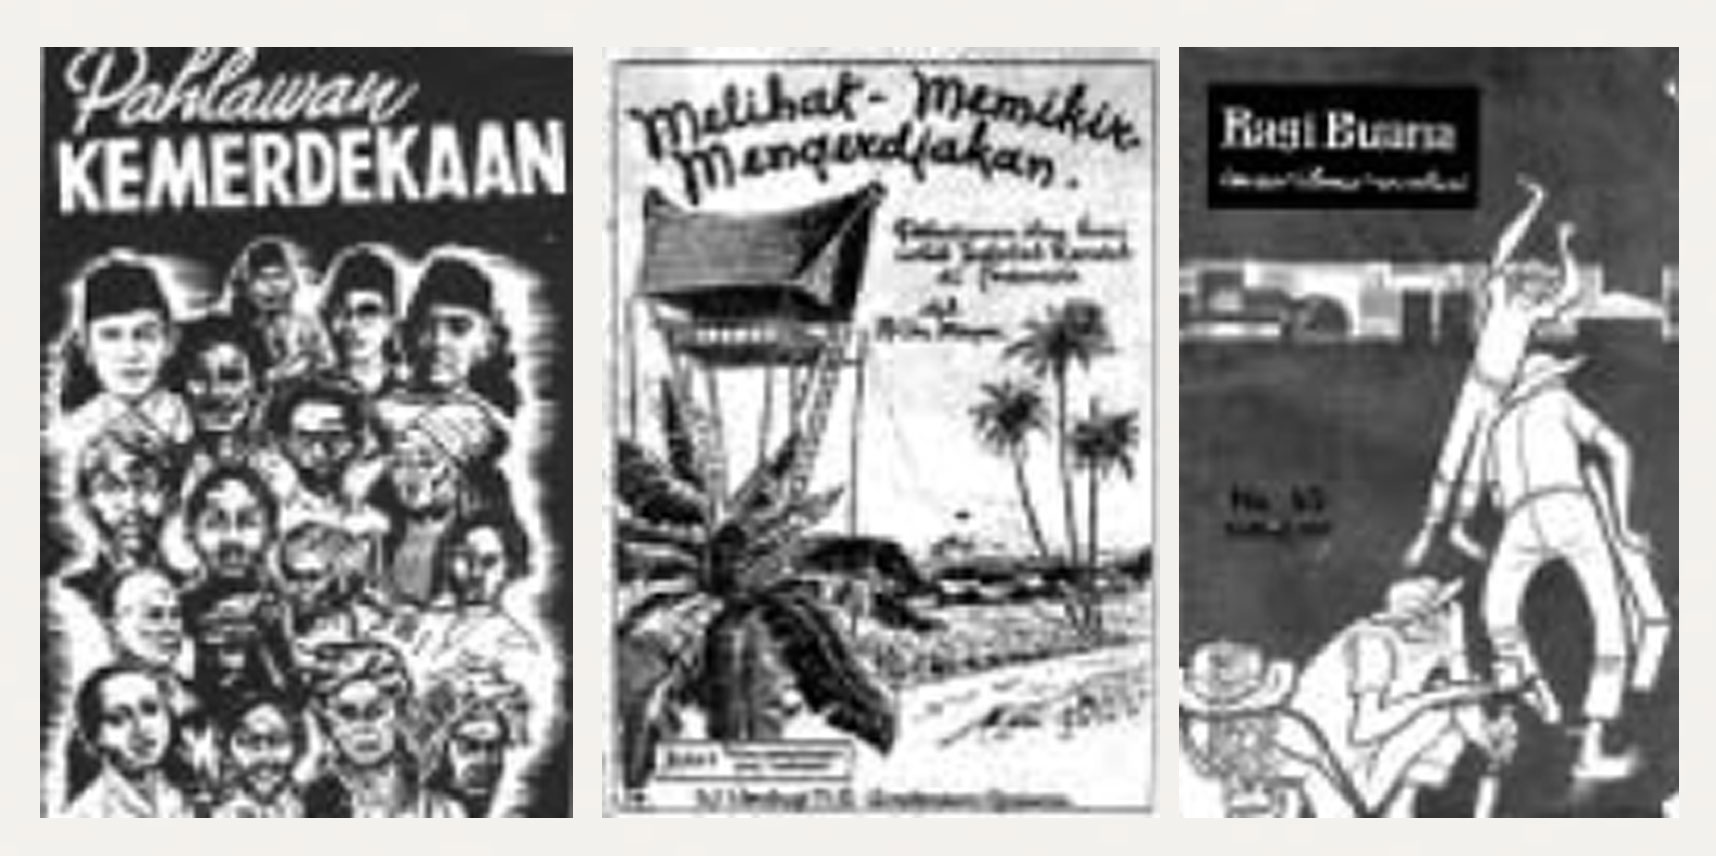 Gambar 4. (a) Kulit muka buku "Pahlawan Kemerdekaan" (1953); (b) Kulit muka buku pelajaran sekolah; (c) Kulit muka majalah "Ragi Buana" tahun 1960-an.